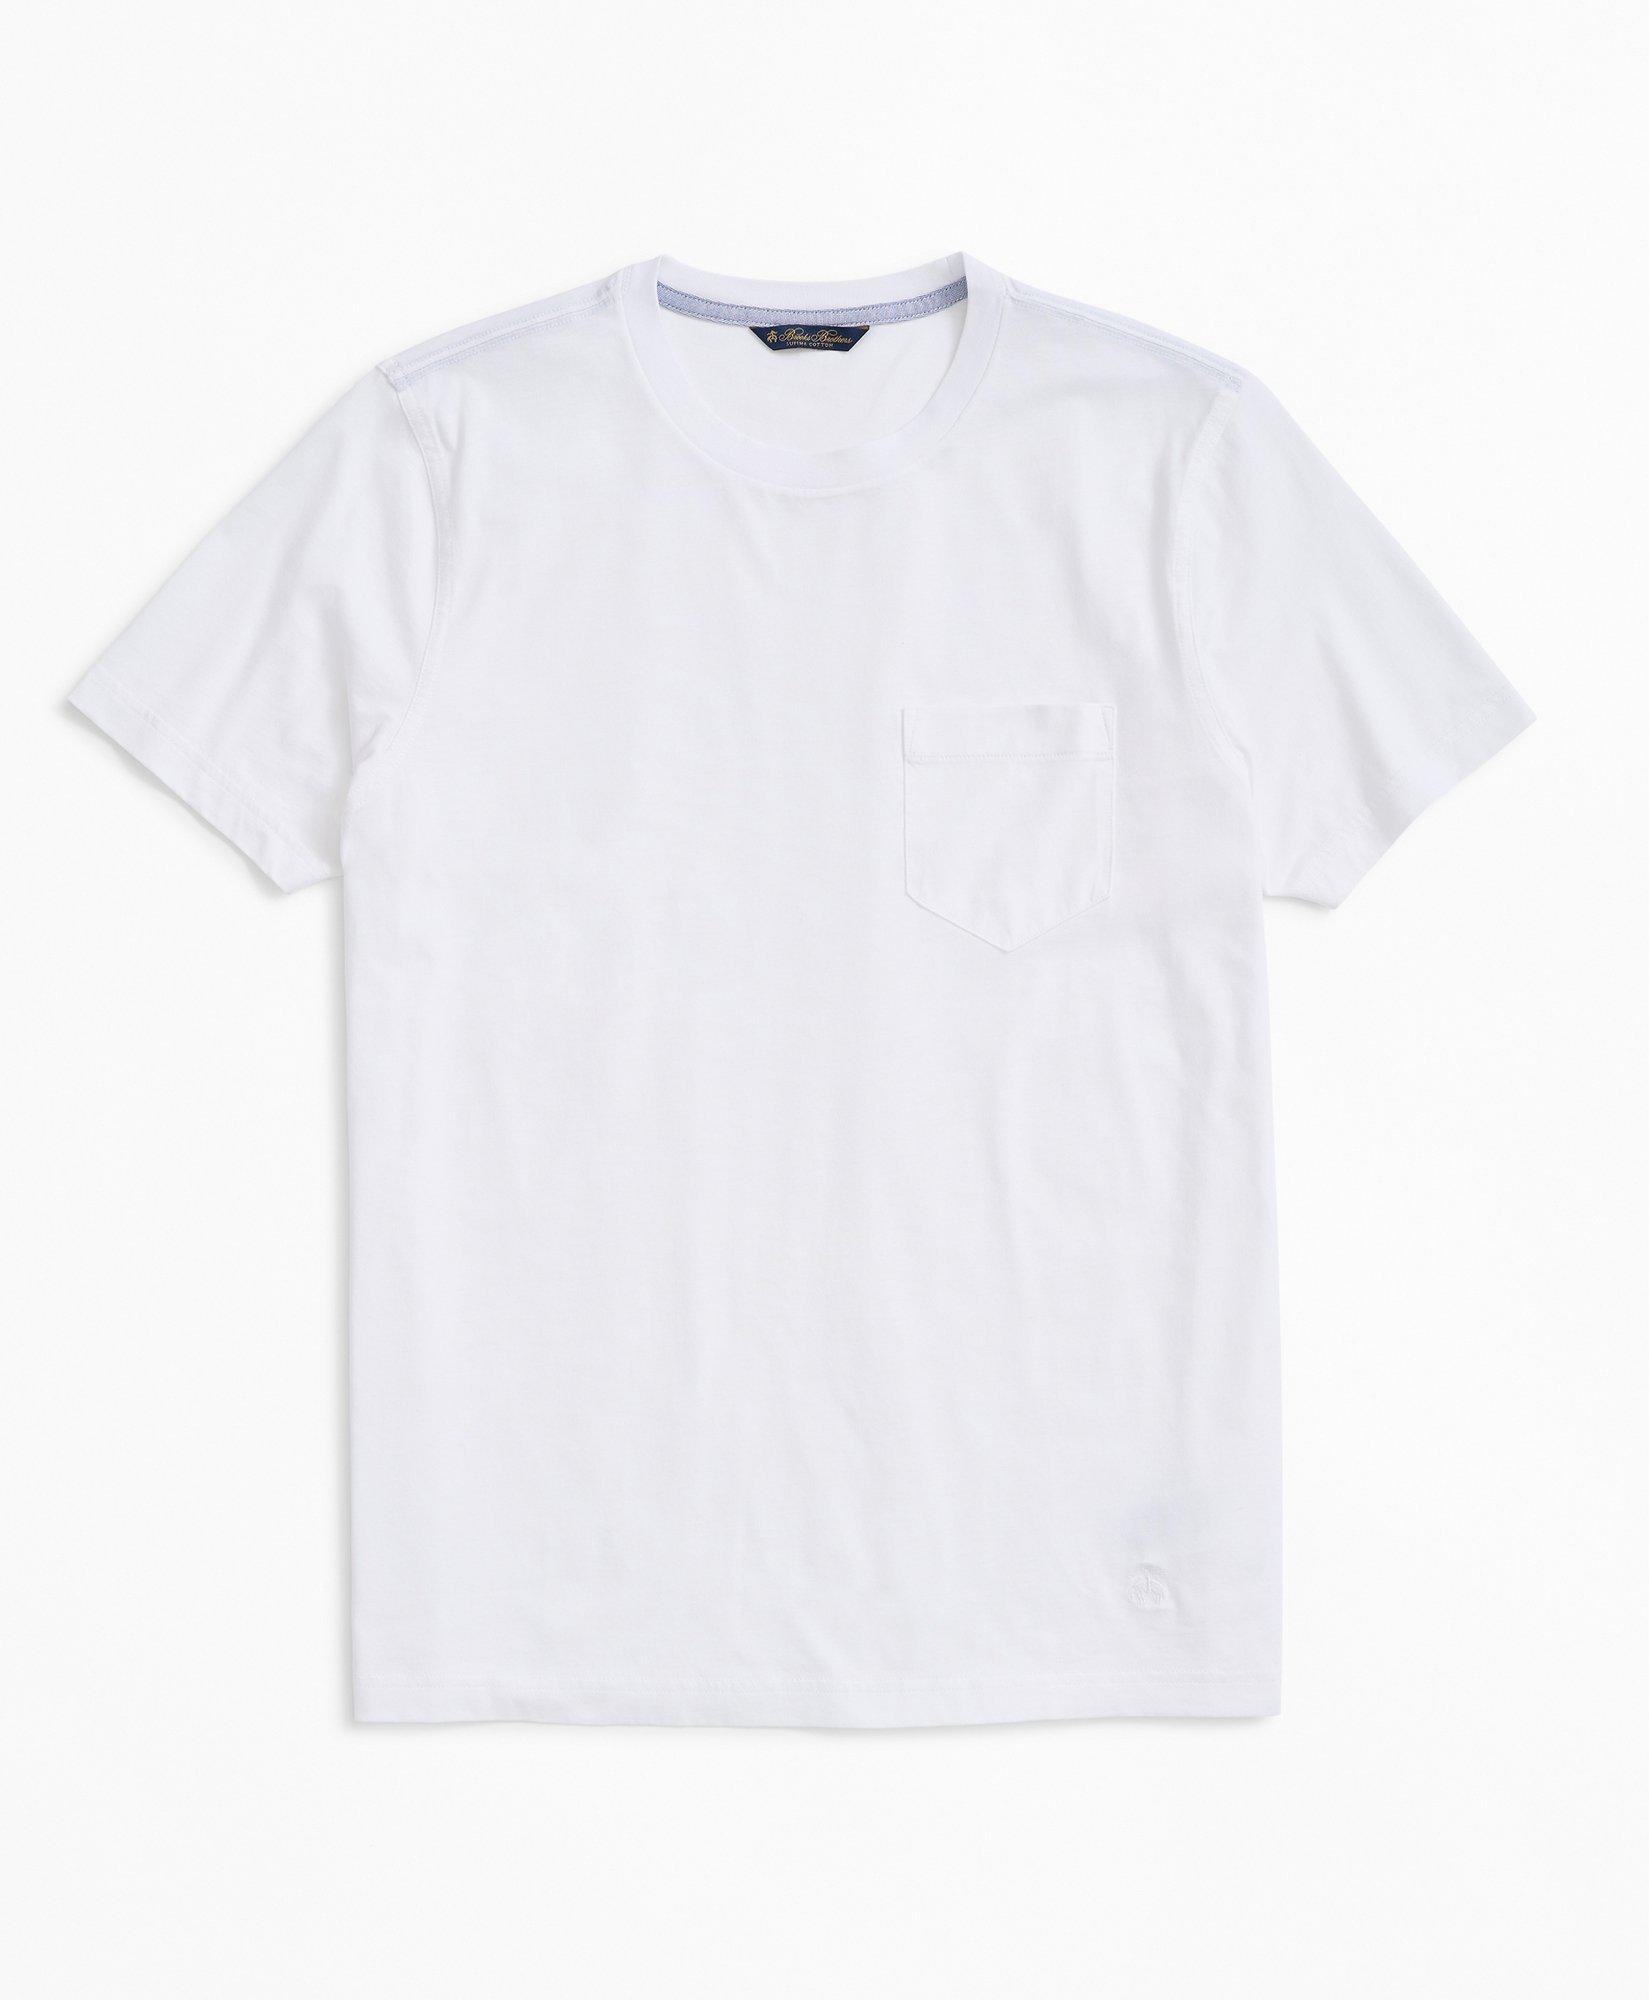 Brooks Brothers Washed Supima Cotton Pocket Crewneck T-shirt | White | Size Medium